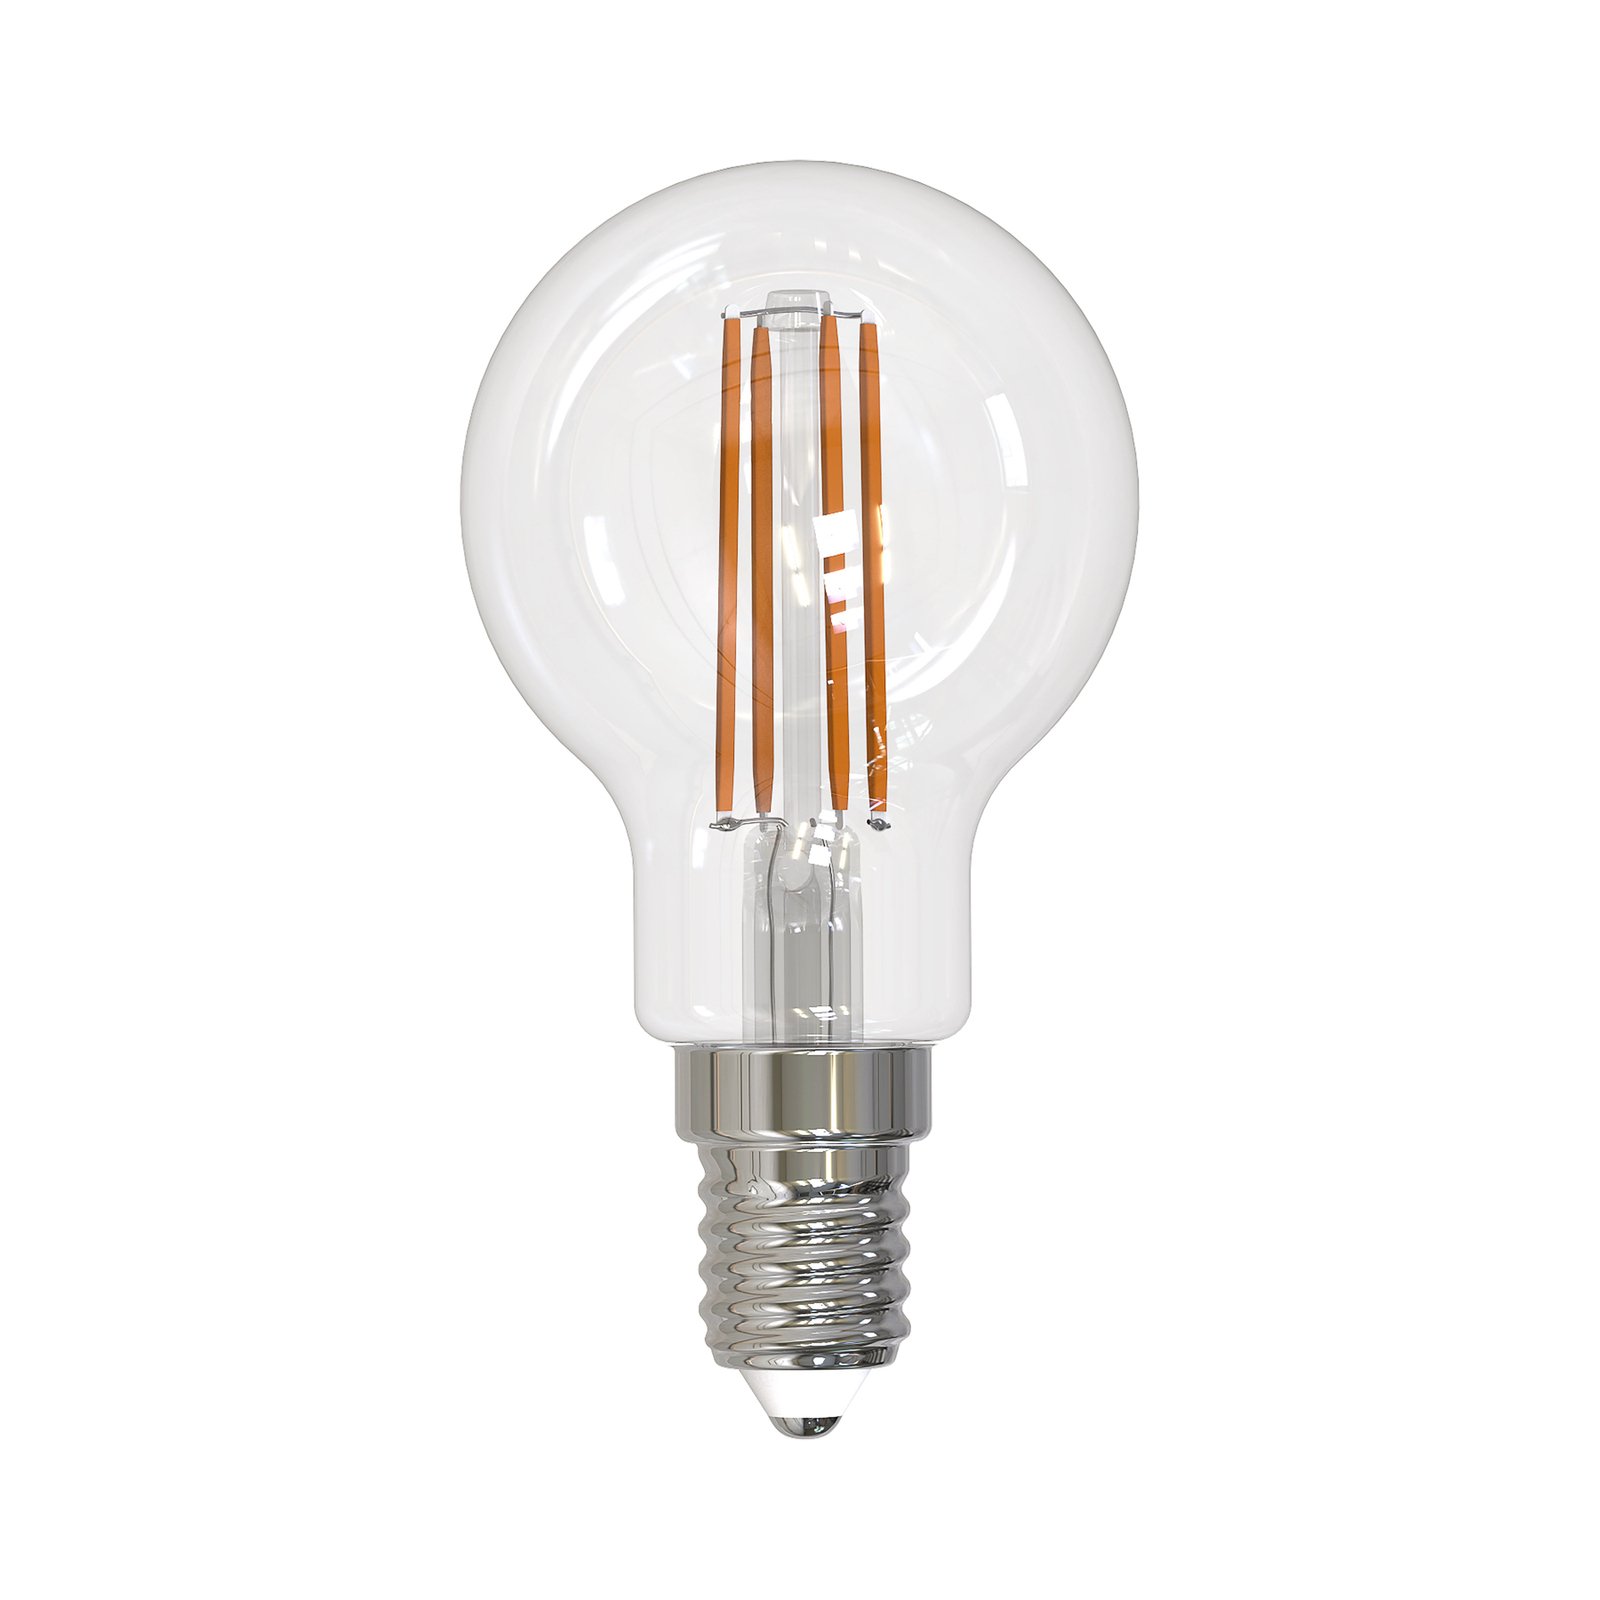 Żarówka filament LED Arcchio E14 G45, zestaw 2 sztuk, 2700 K